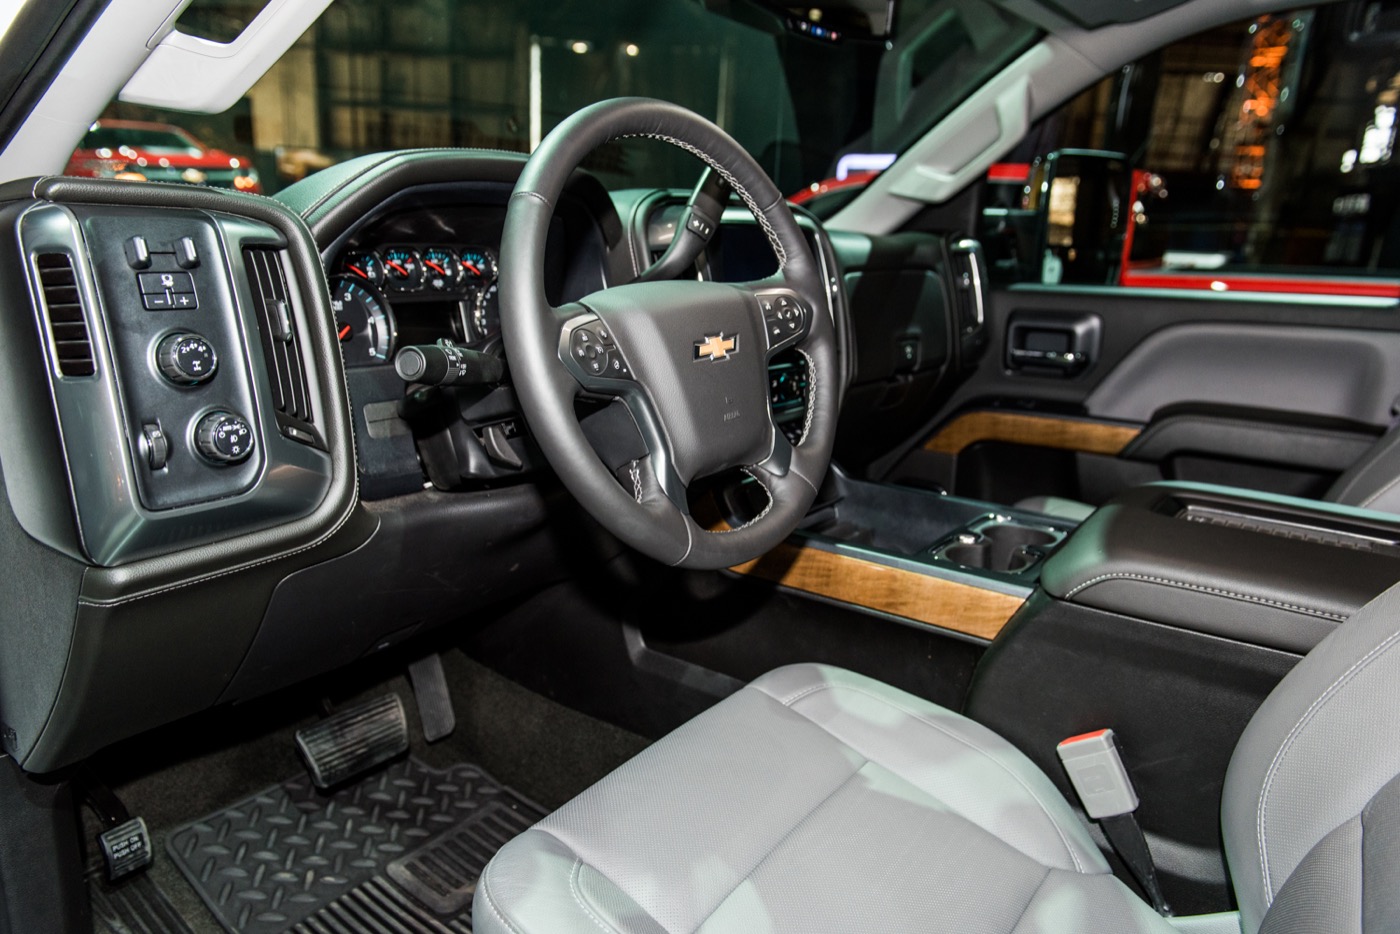 2015 Chevrolet Silverado Interior Auxdelicesdirenecom.